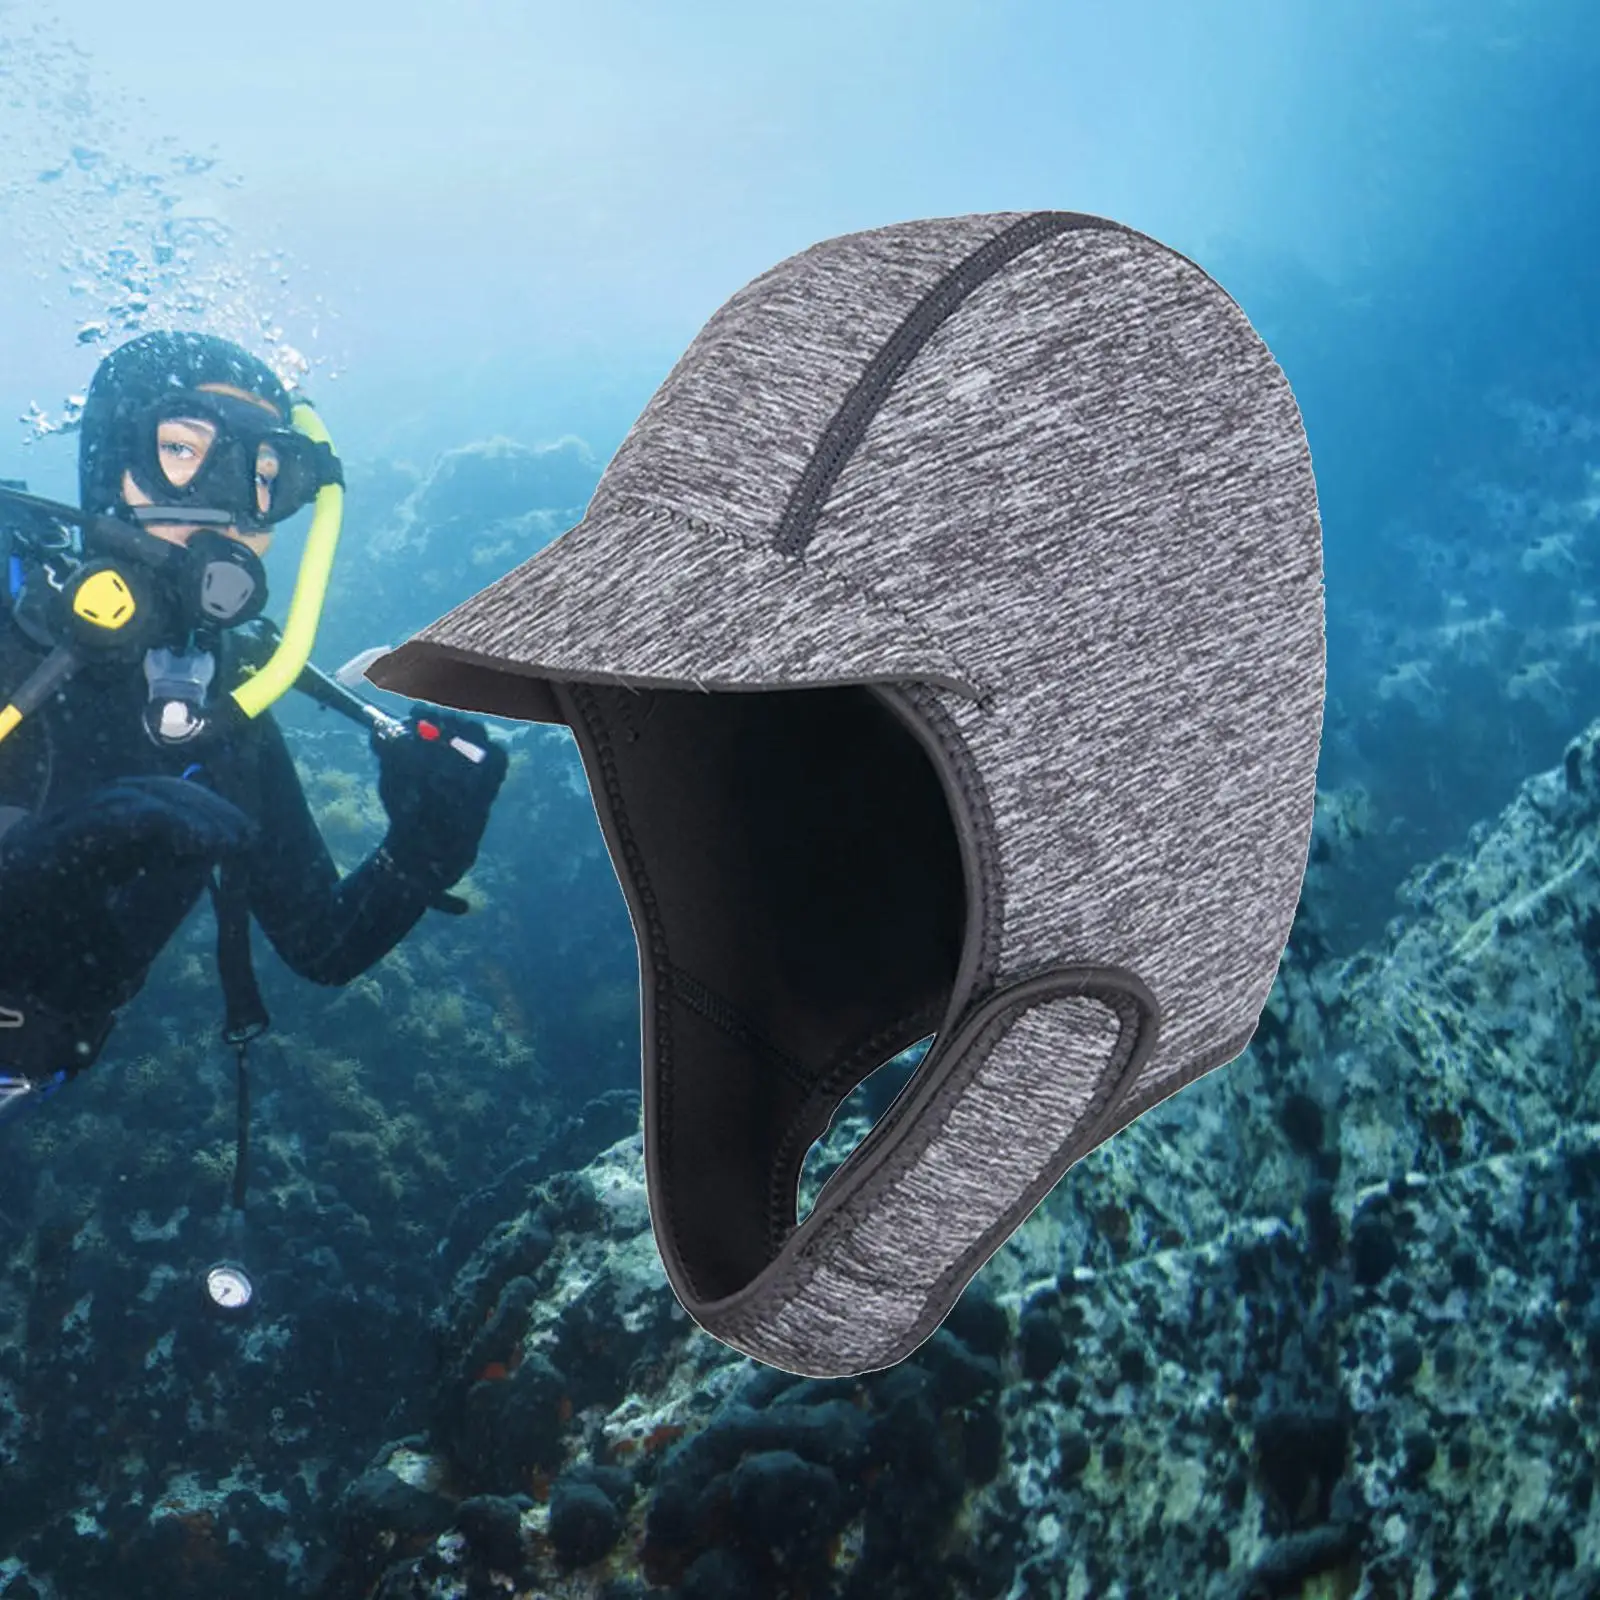 2mm Neoprene Wetsuit Hood Head Cover Waterproof Diving Hood Cap Swimming Hat for Underwater Canoeing Surfing Snorkeling Sailing